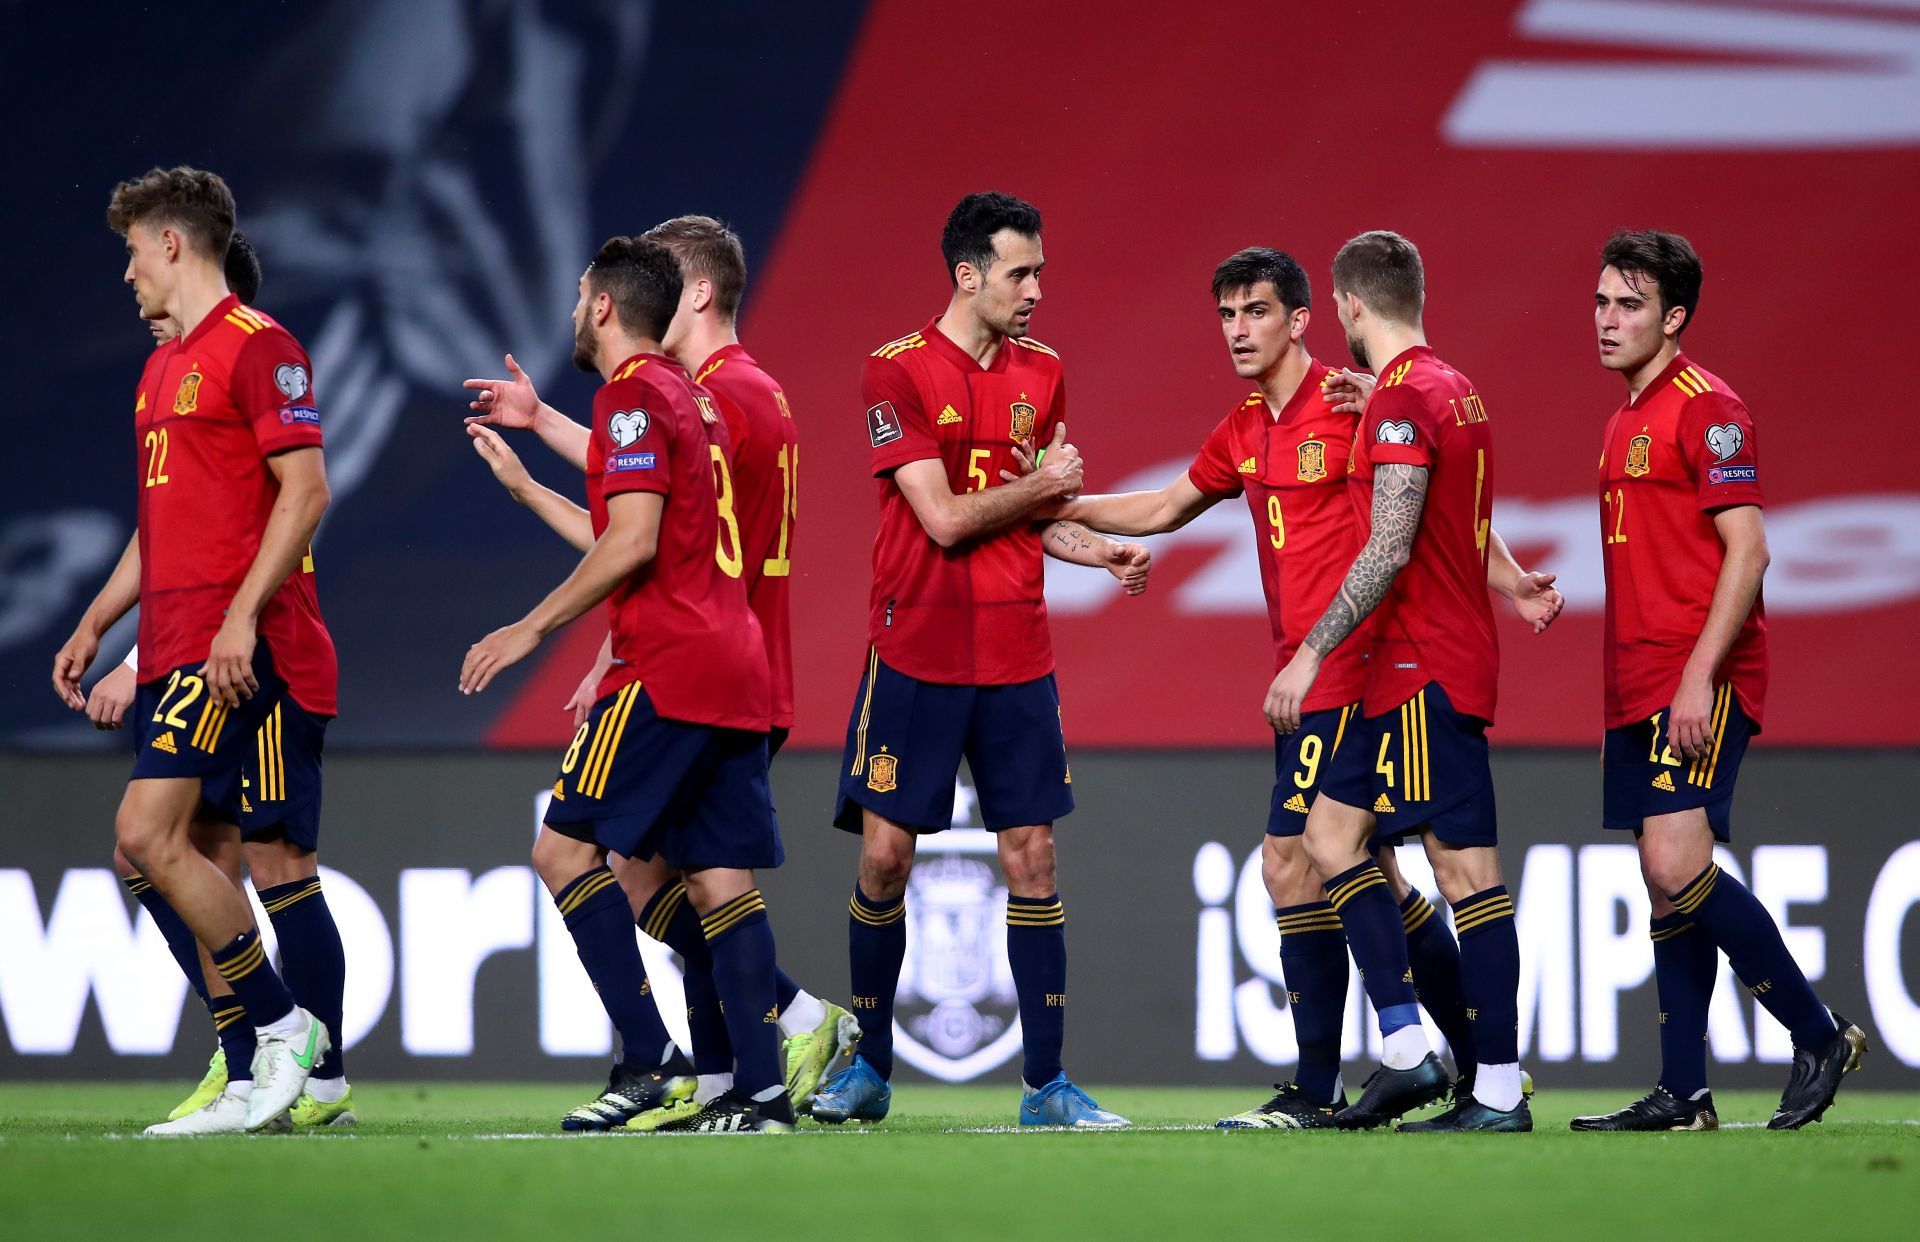 Spain and Sweden go head to head at the Estadio de La Cartuja